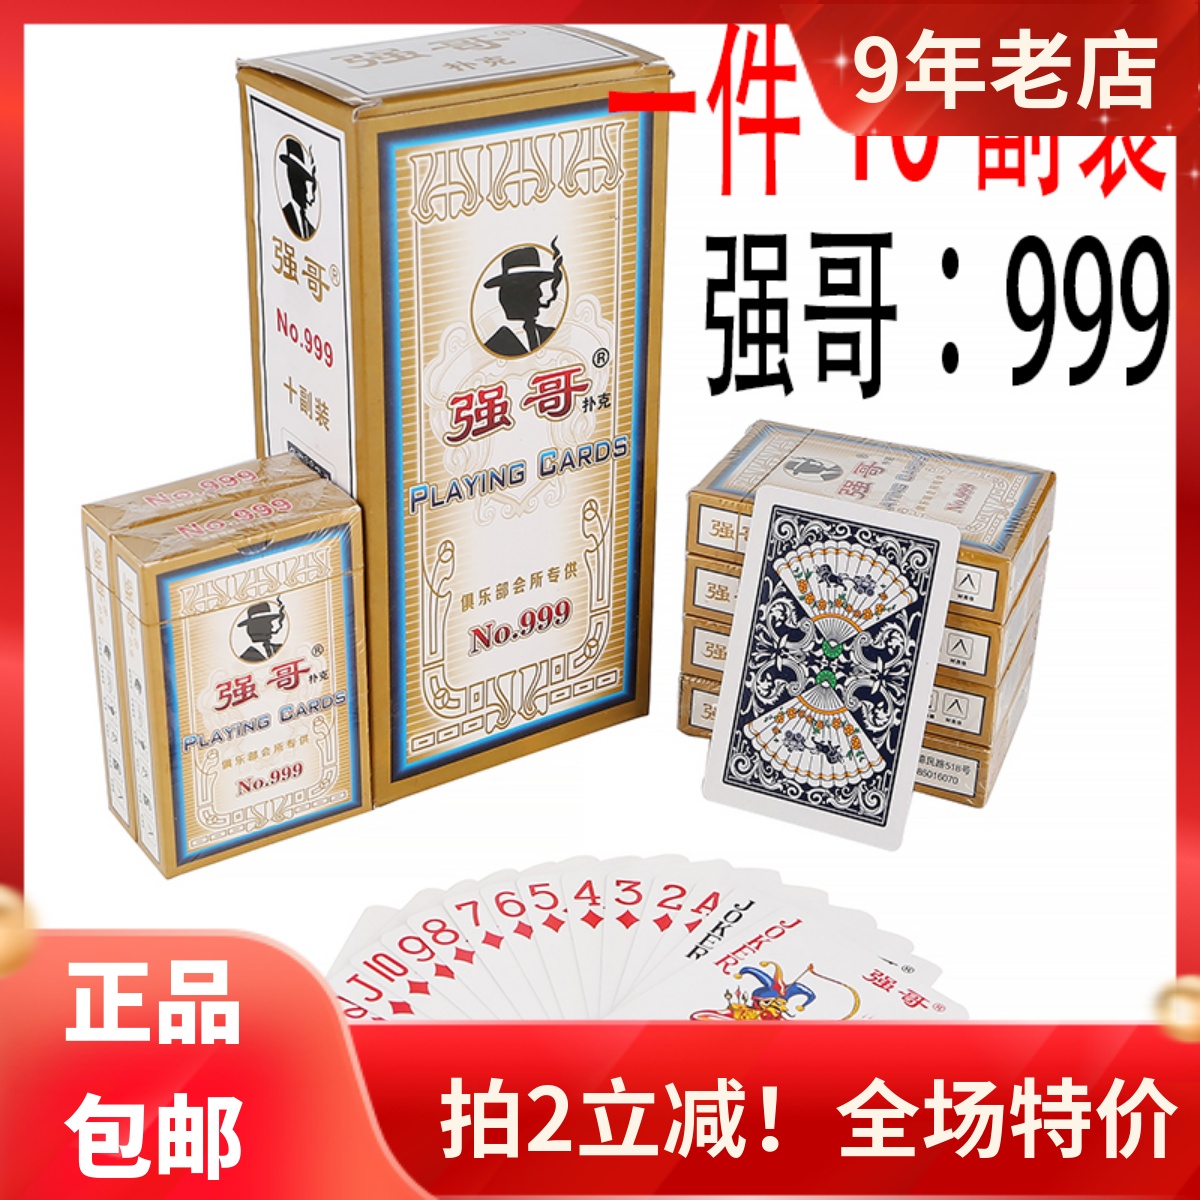 100副正品授权原厂强哥扑克999型号整箱10副便宜特价纸牌扑克牌